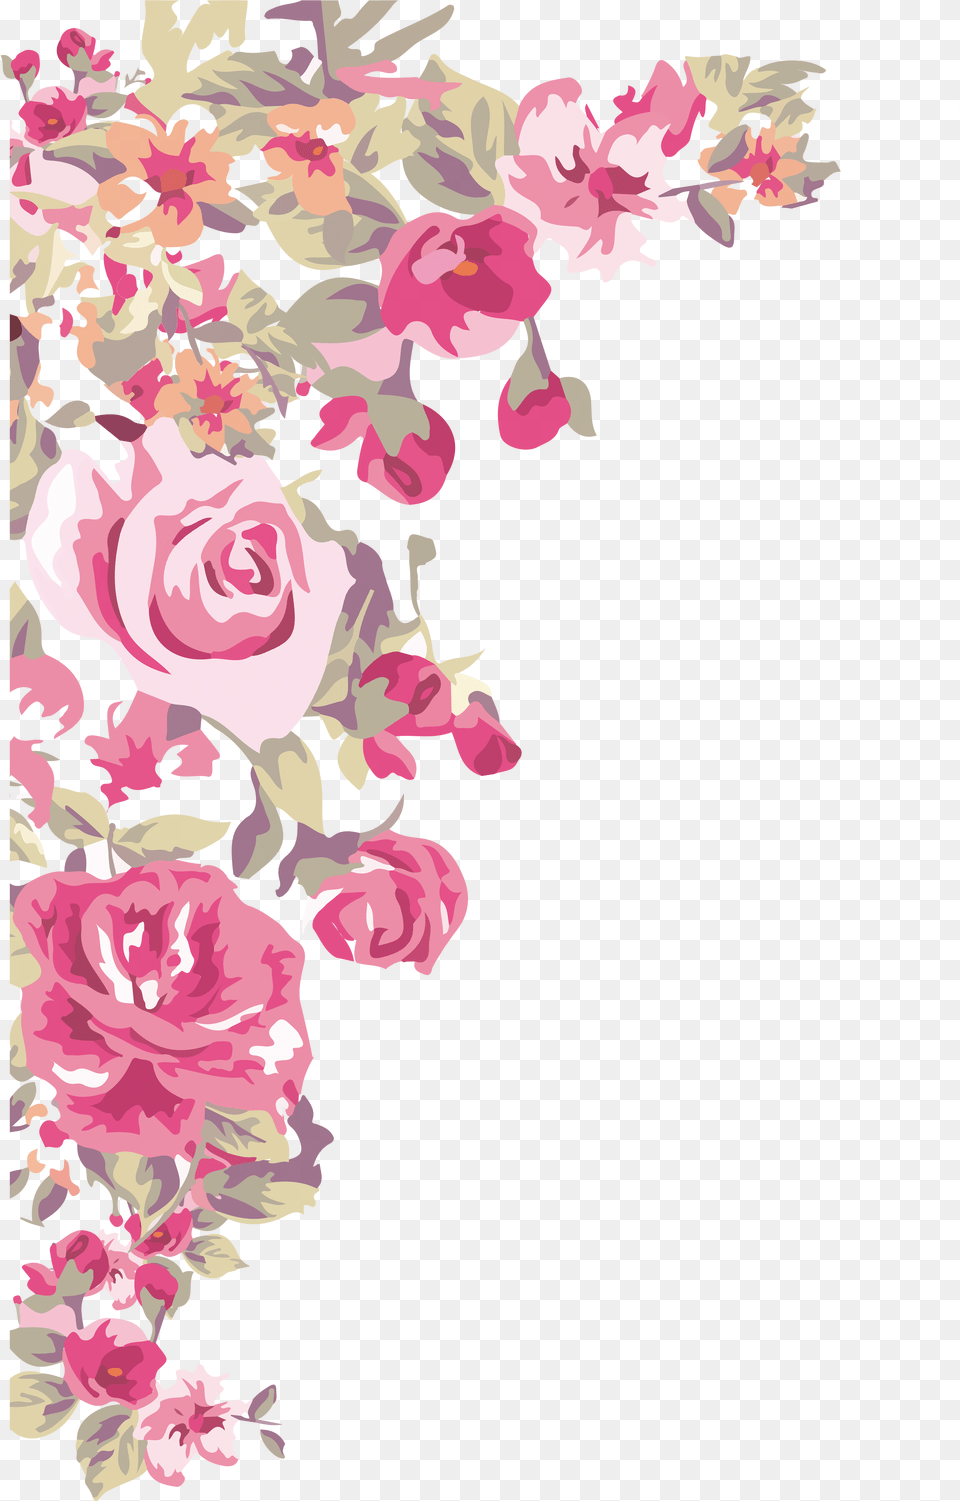 Painted Flowers Corner Download Flower Corner Border Design, Art, Floral Design, Graphics, Pattern Png Image